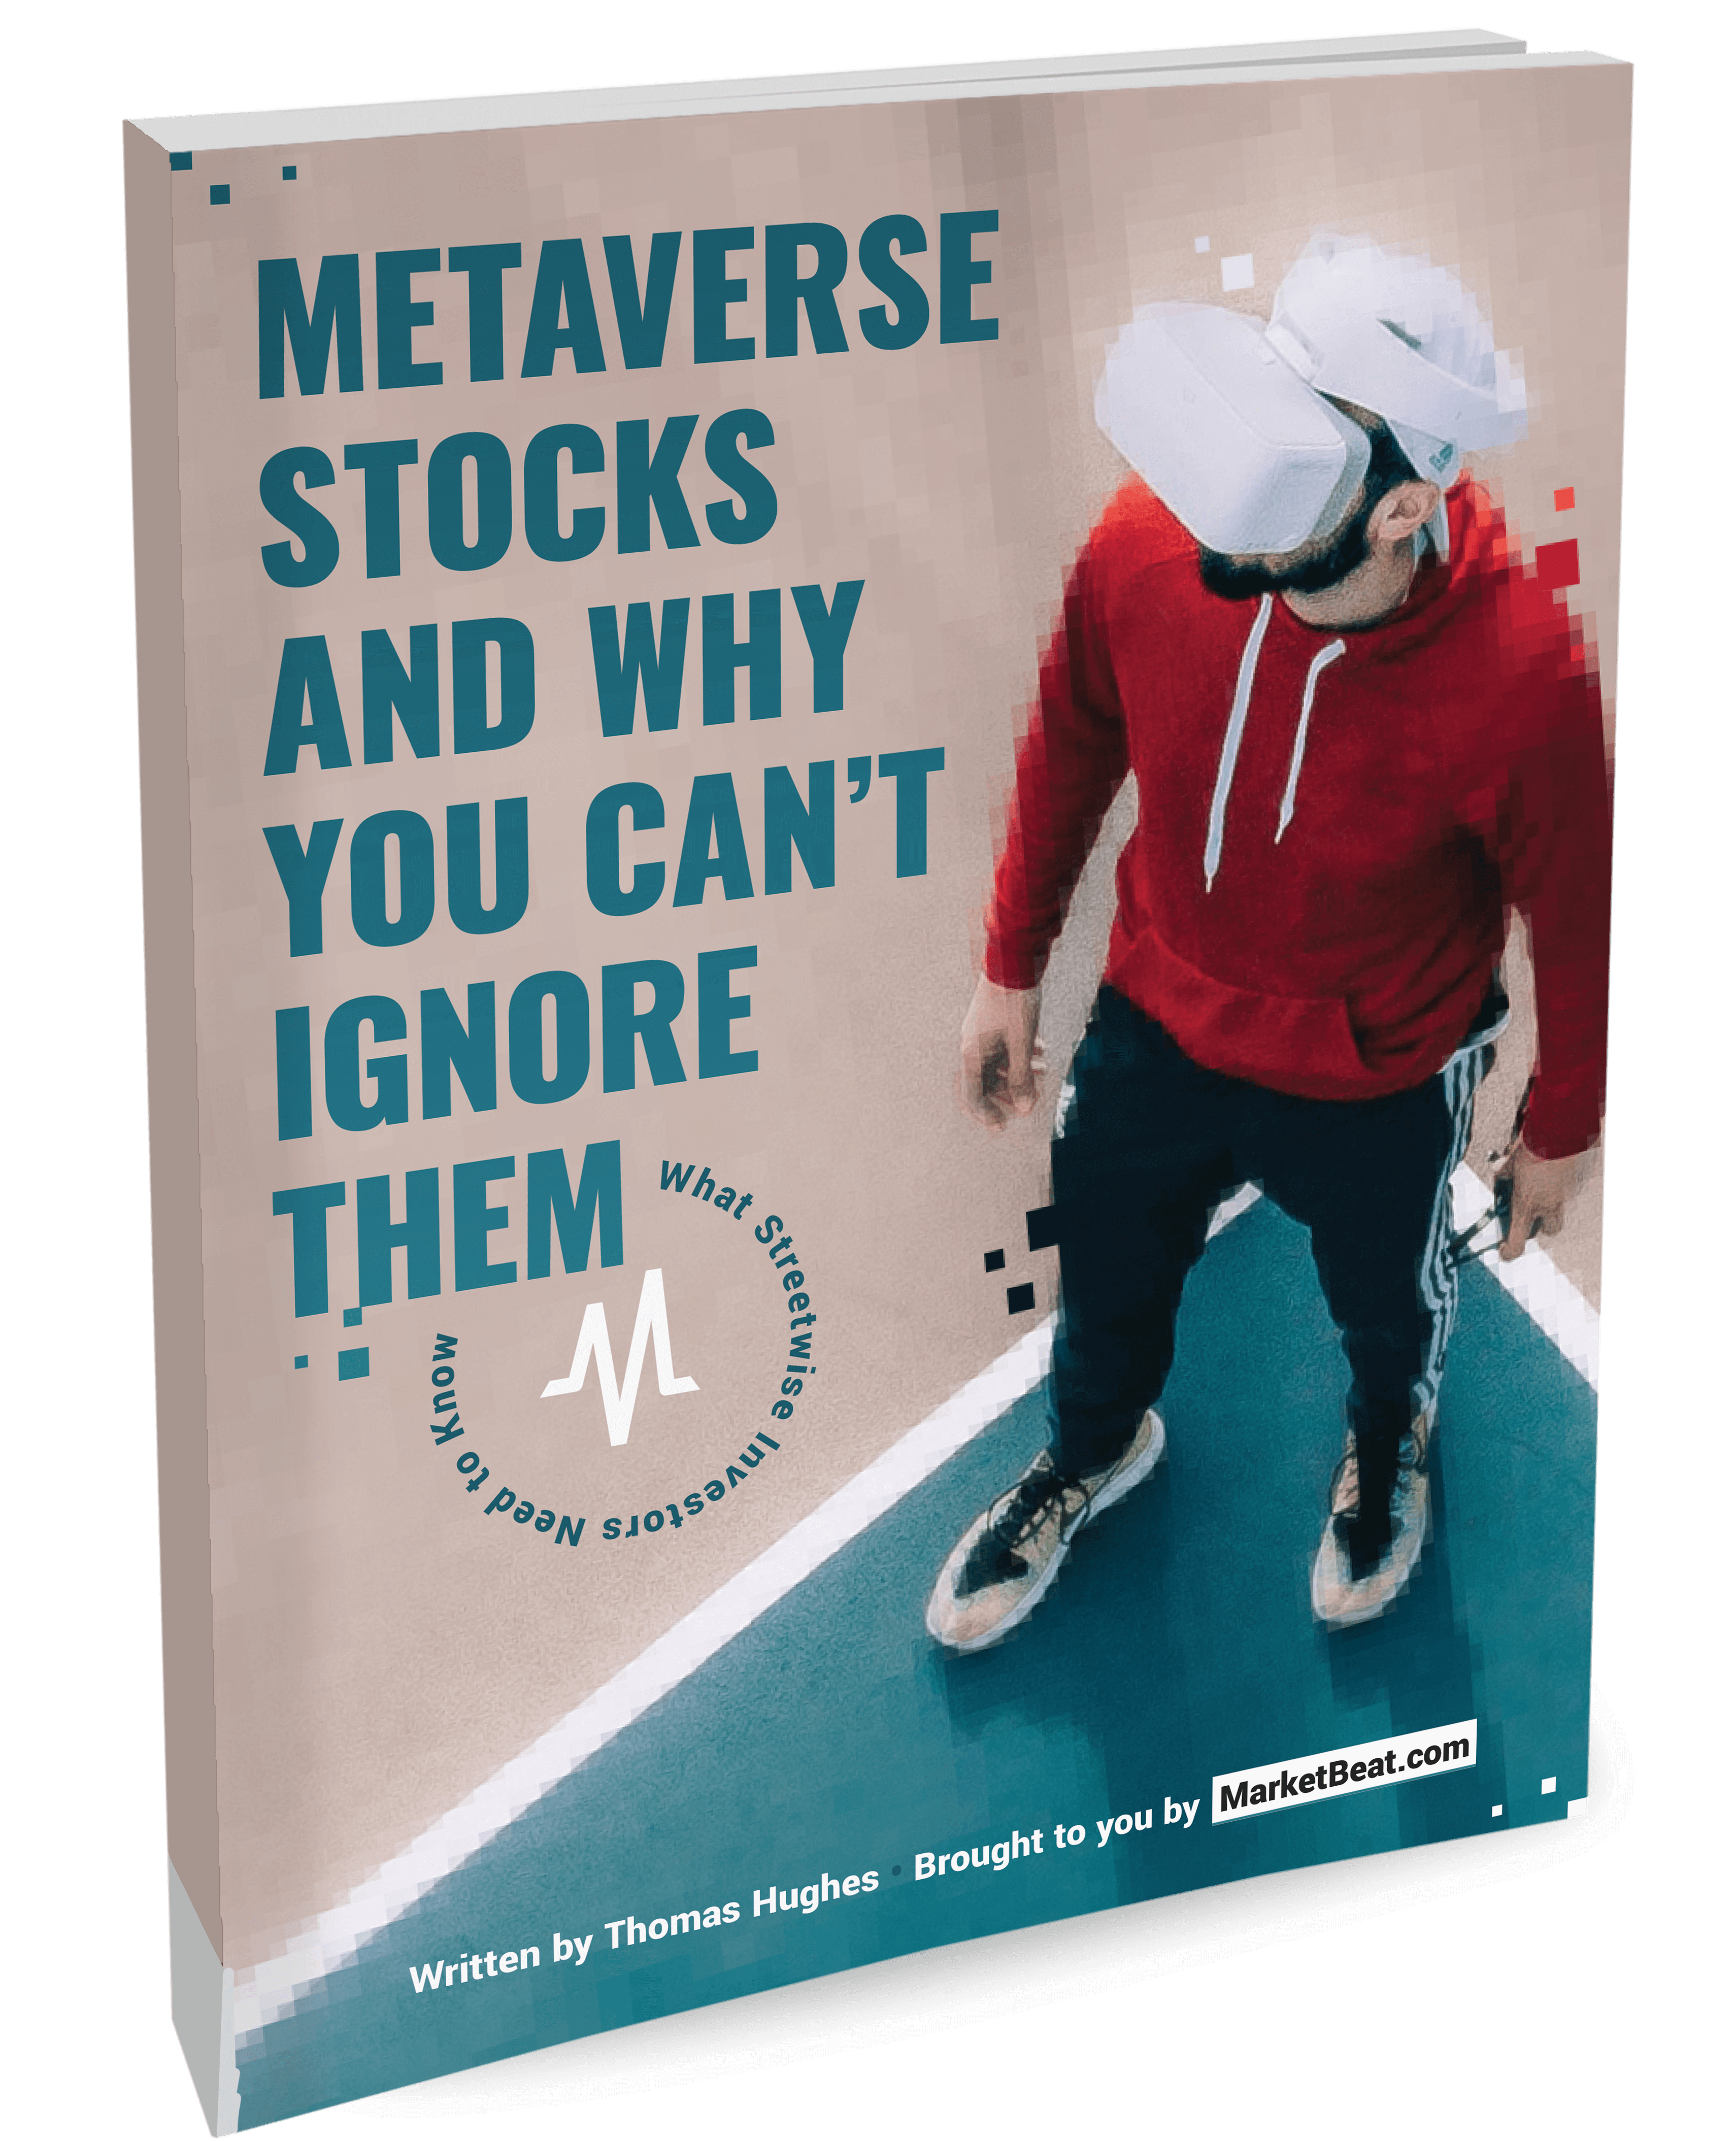 Stock de Metaverse y por qué no puedes ignorar su portada